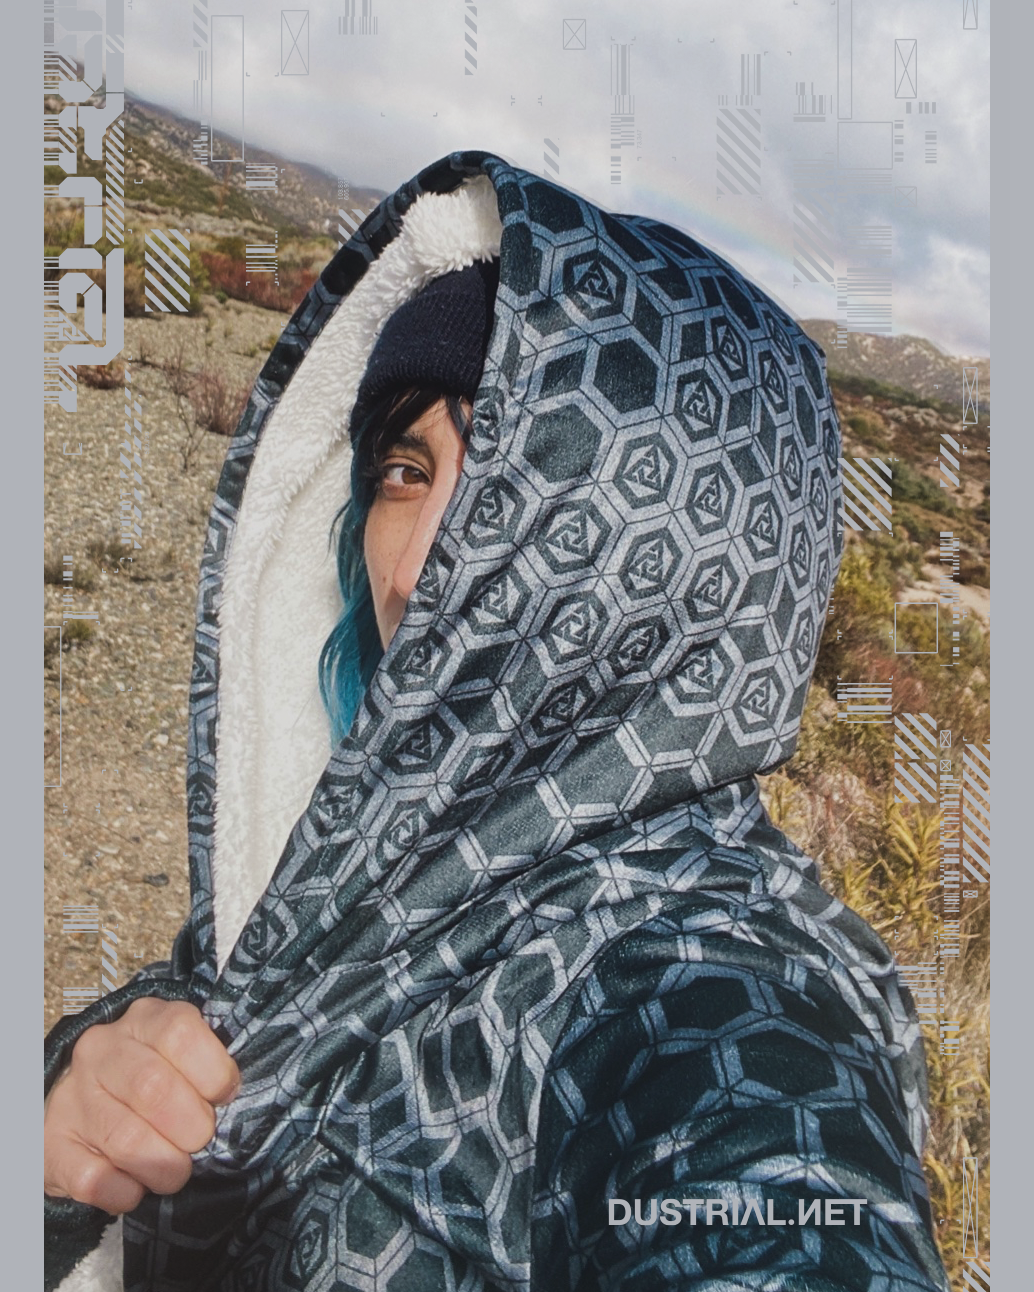 iko wearing a dustrial deepfleece cloak in the Mojave desert